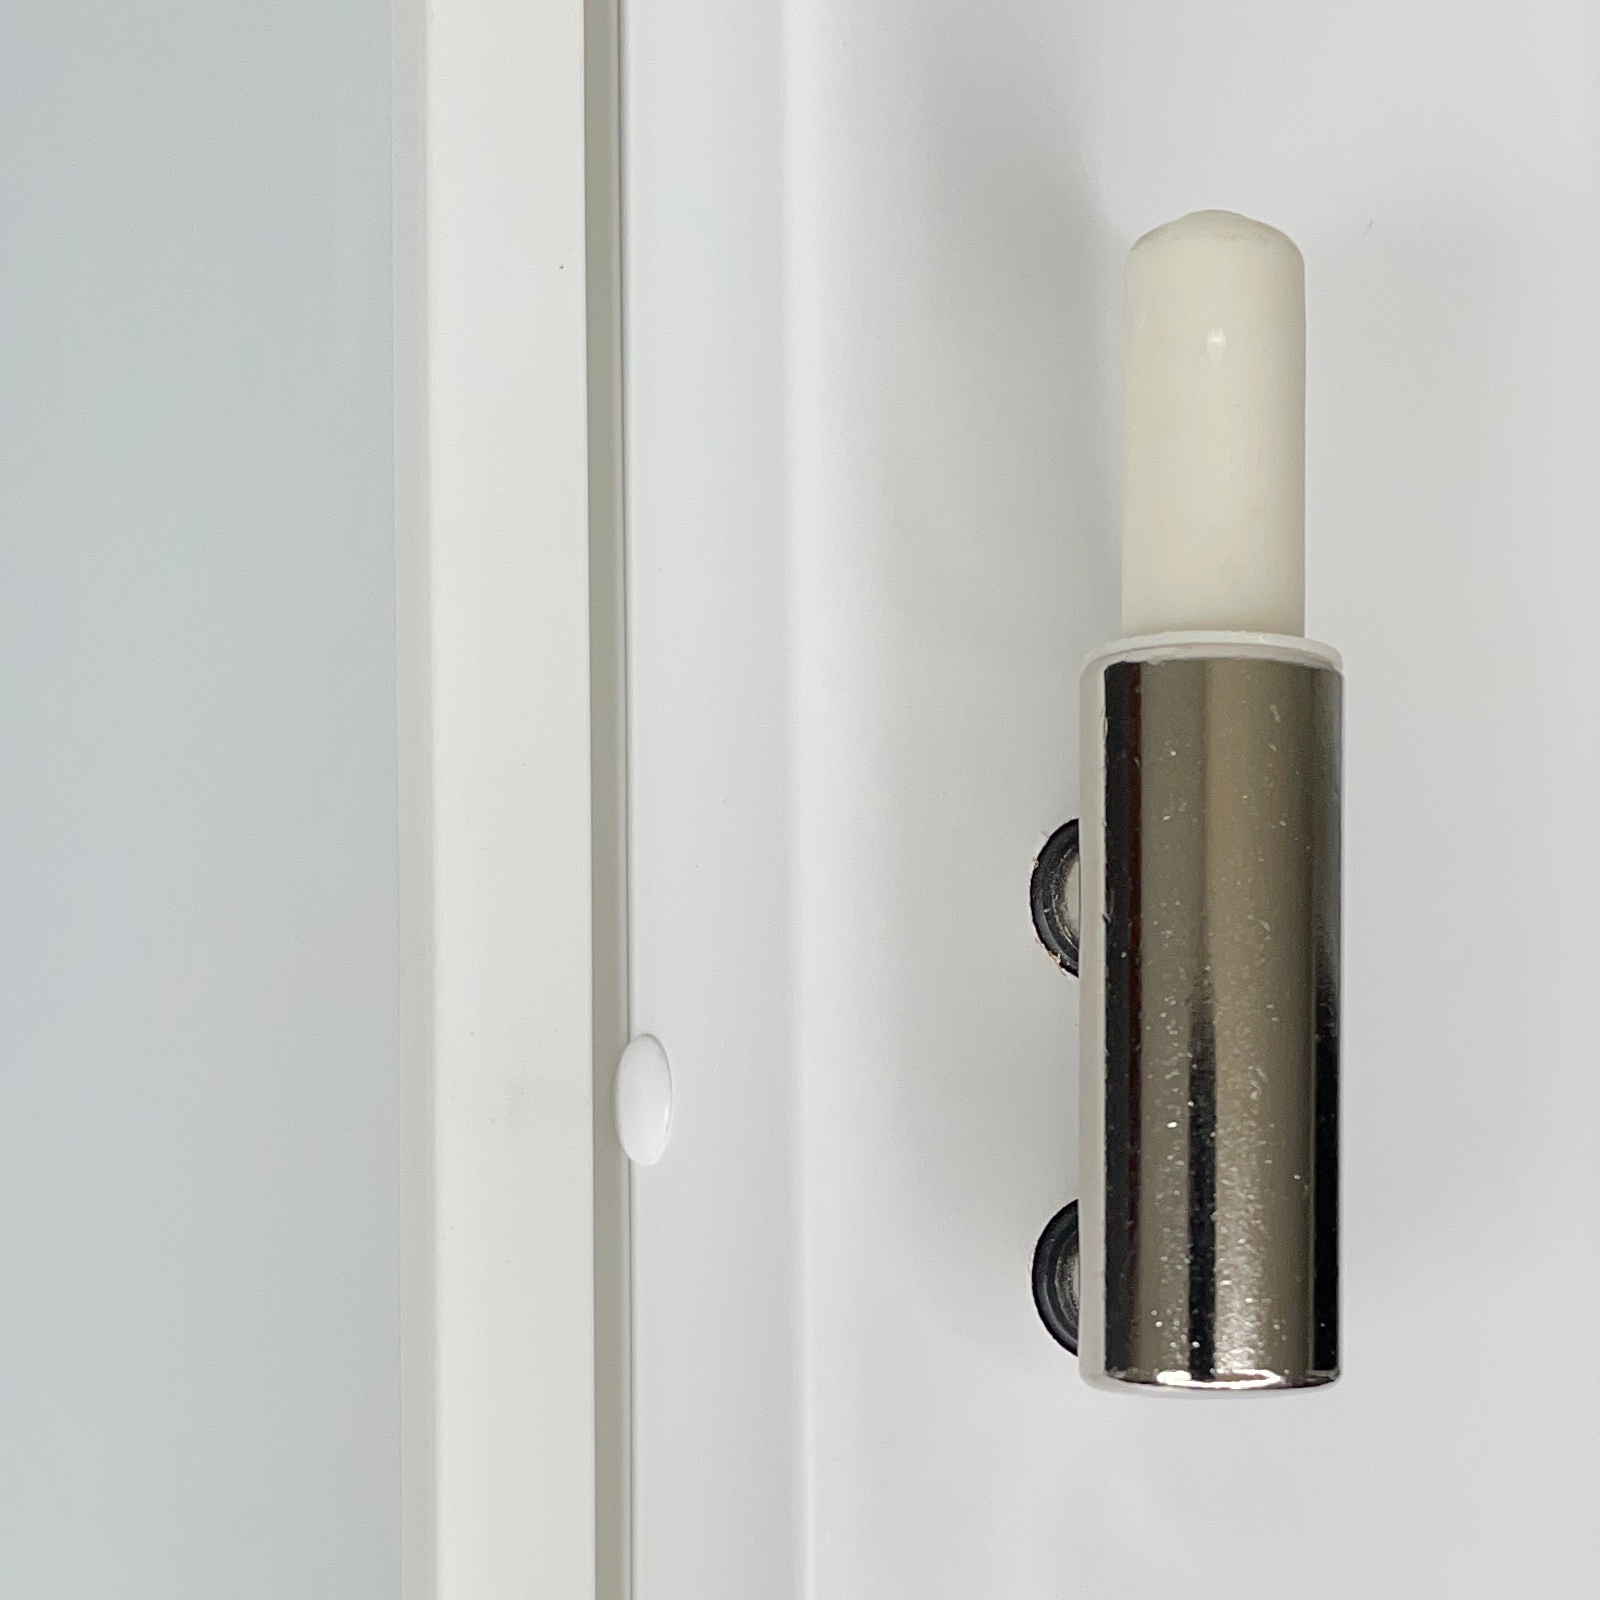 Zimmertür mit Zarge und Lichtausschnitt brillant-weiß 4 Rillen Designkante - Modell Designtür Q43LAS